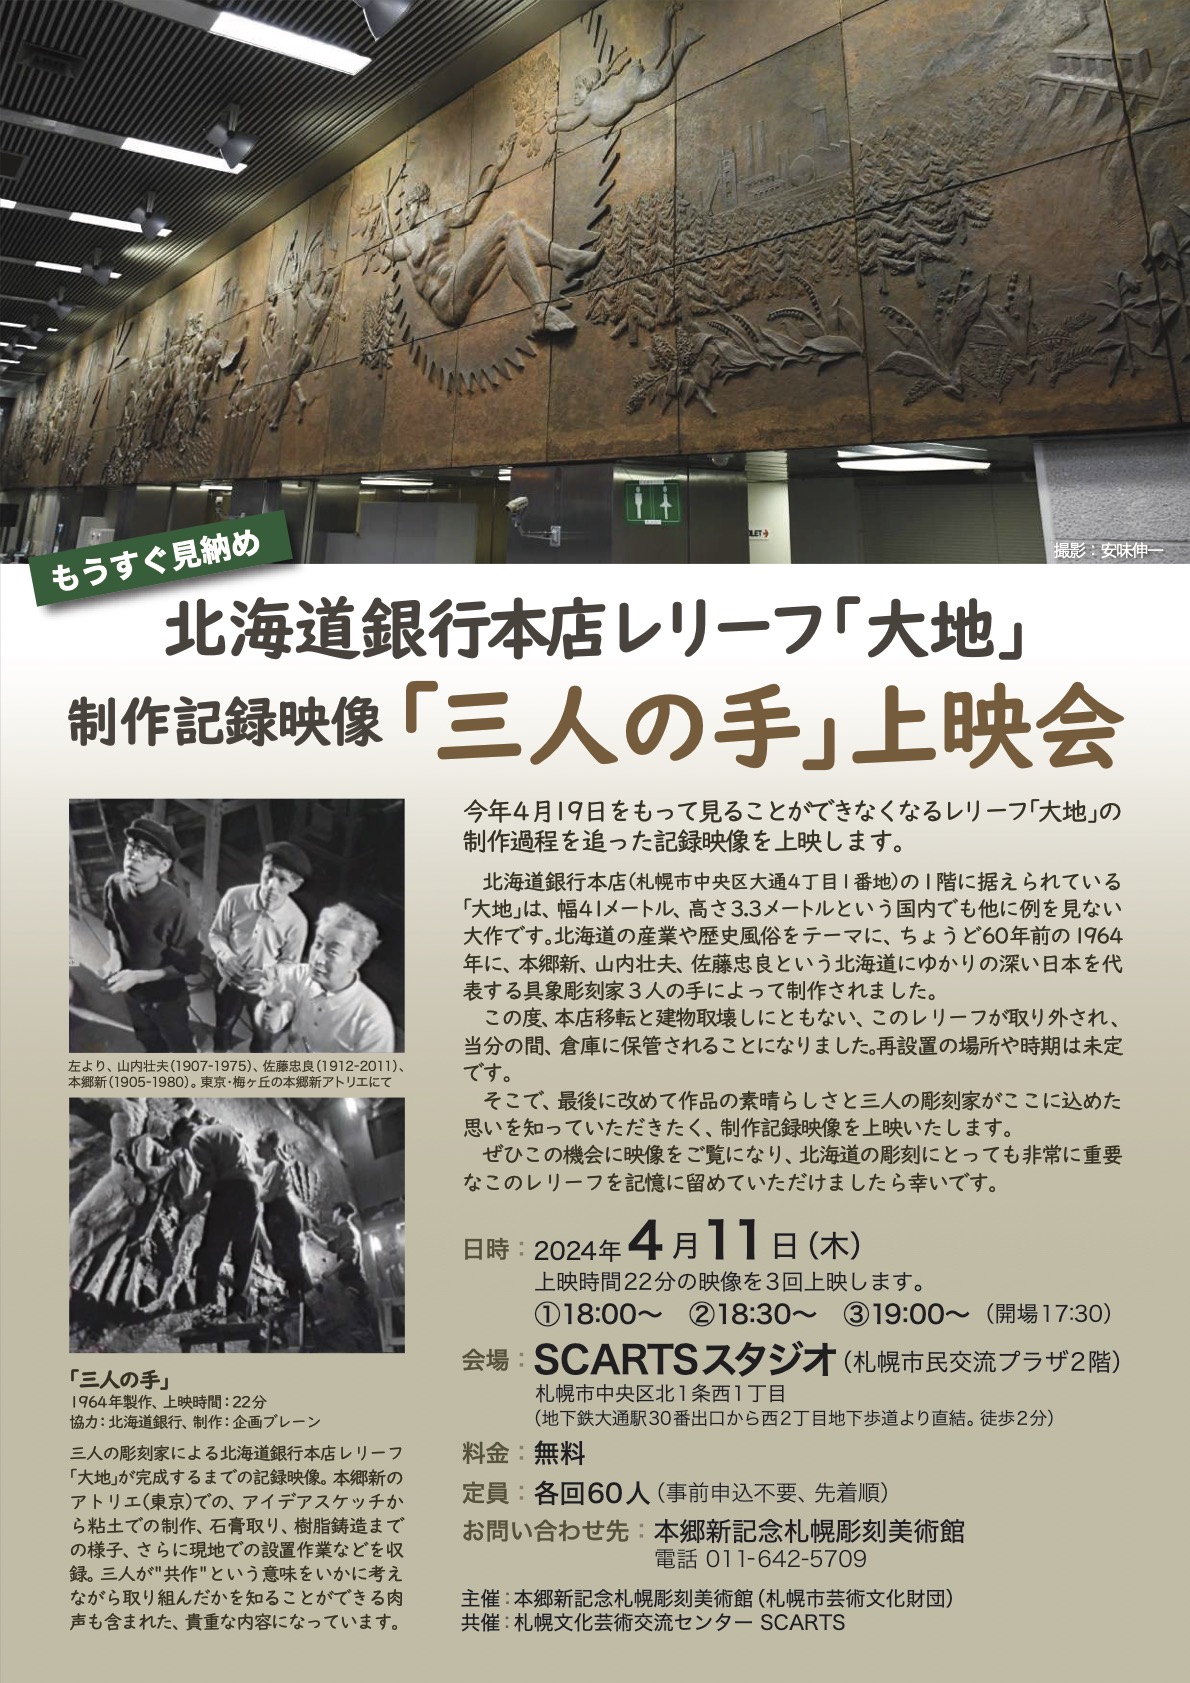 北海道銀行本店レリーフ「大地」の制作記録映像「三人の手」上映会の画像イメージ